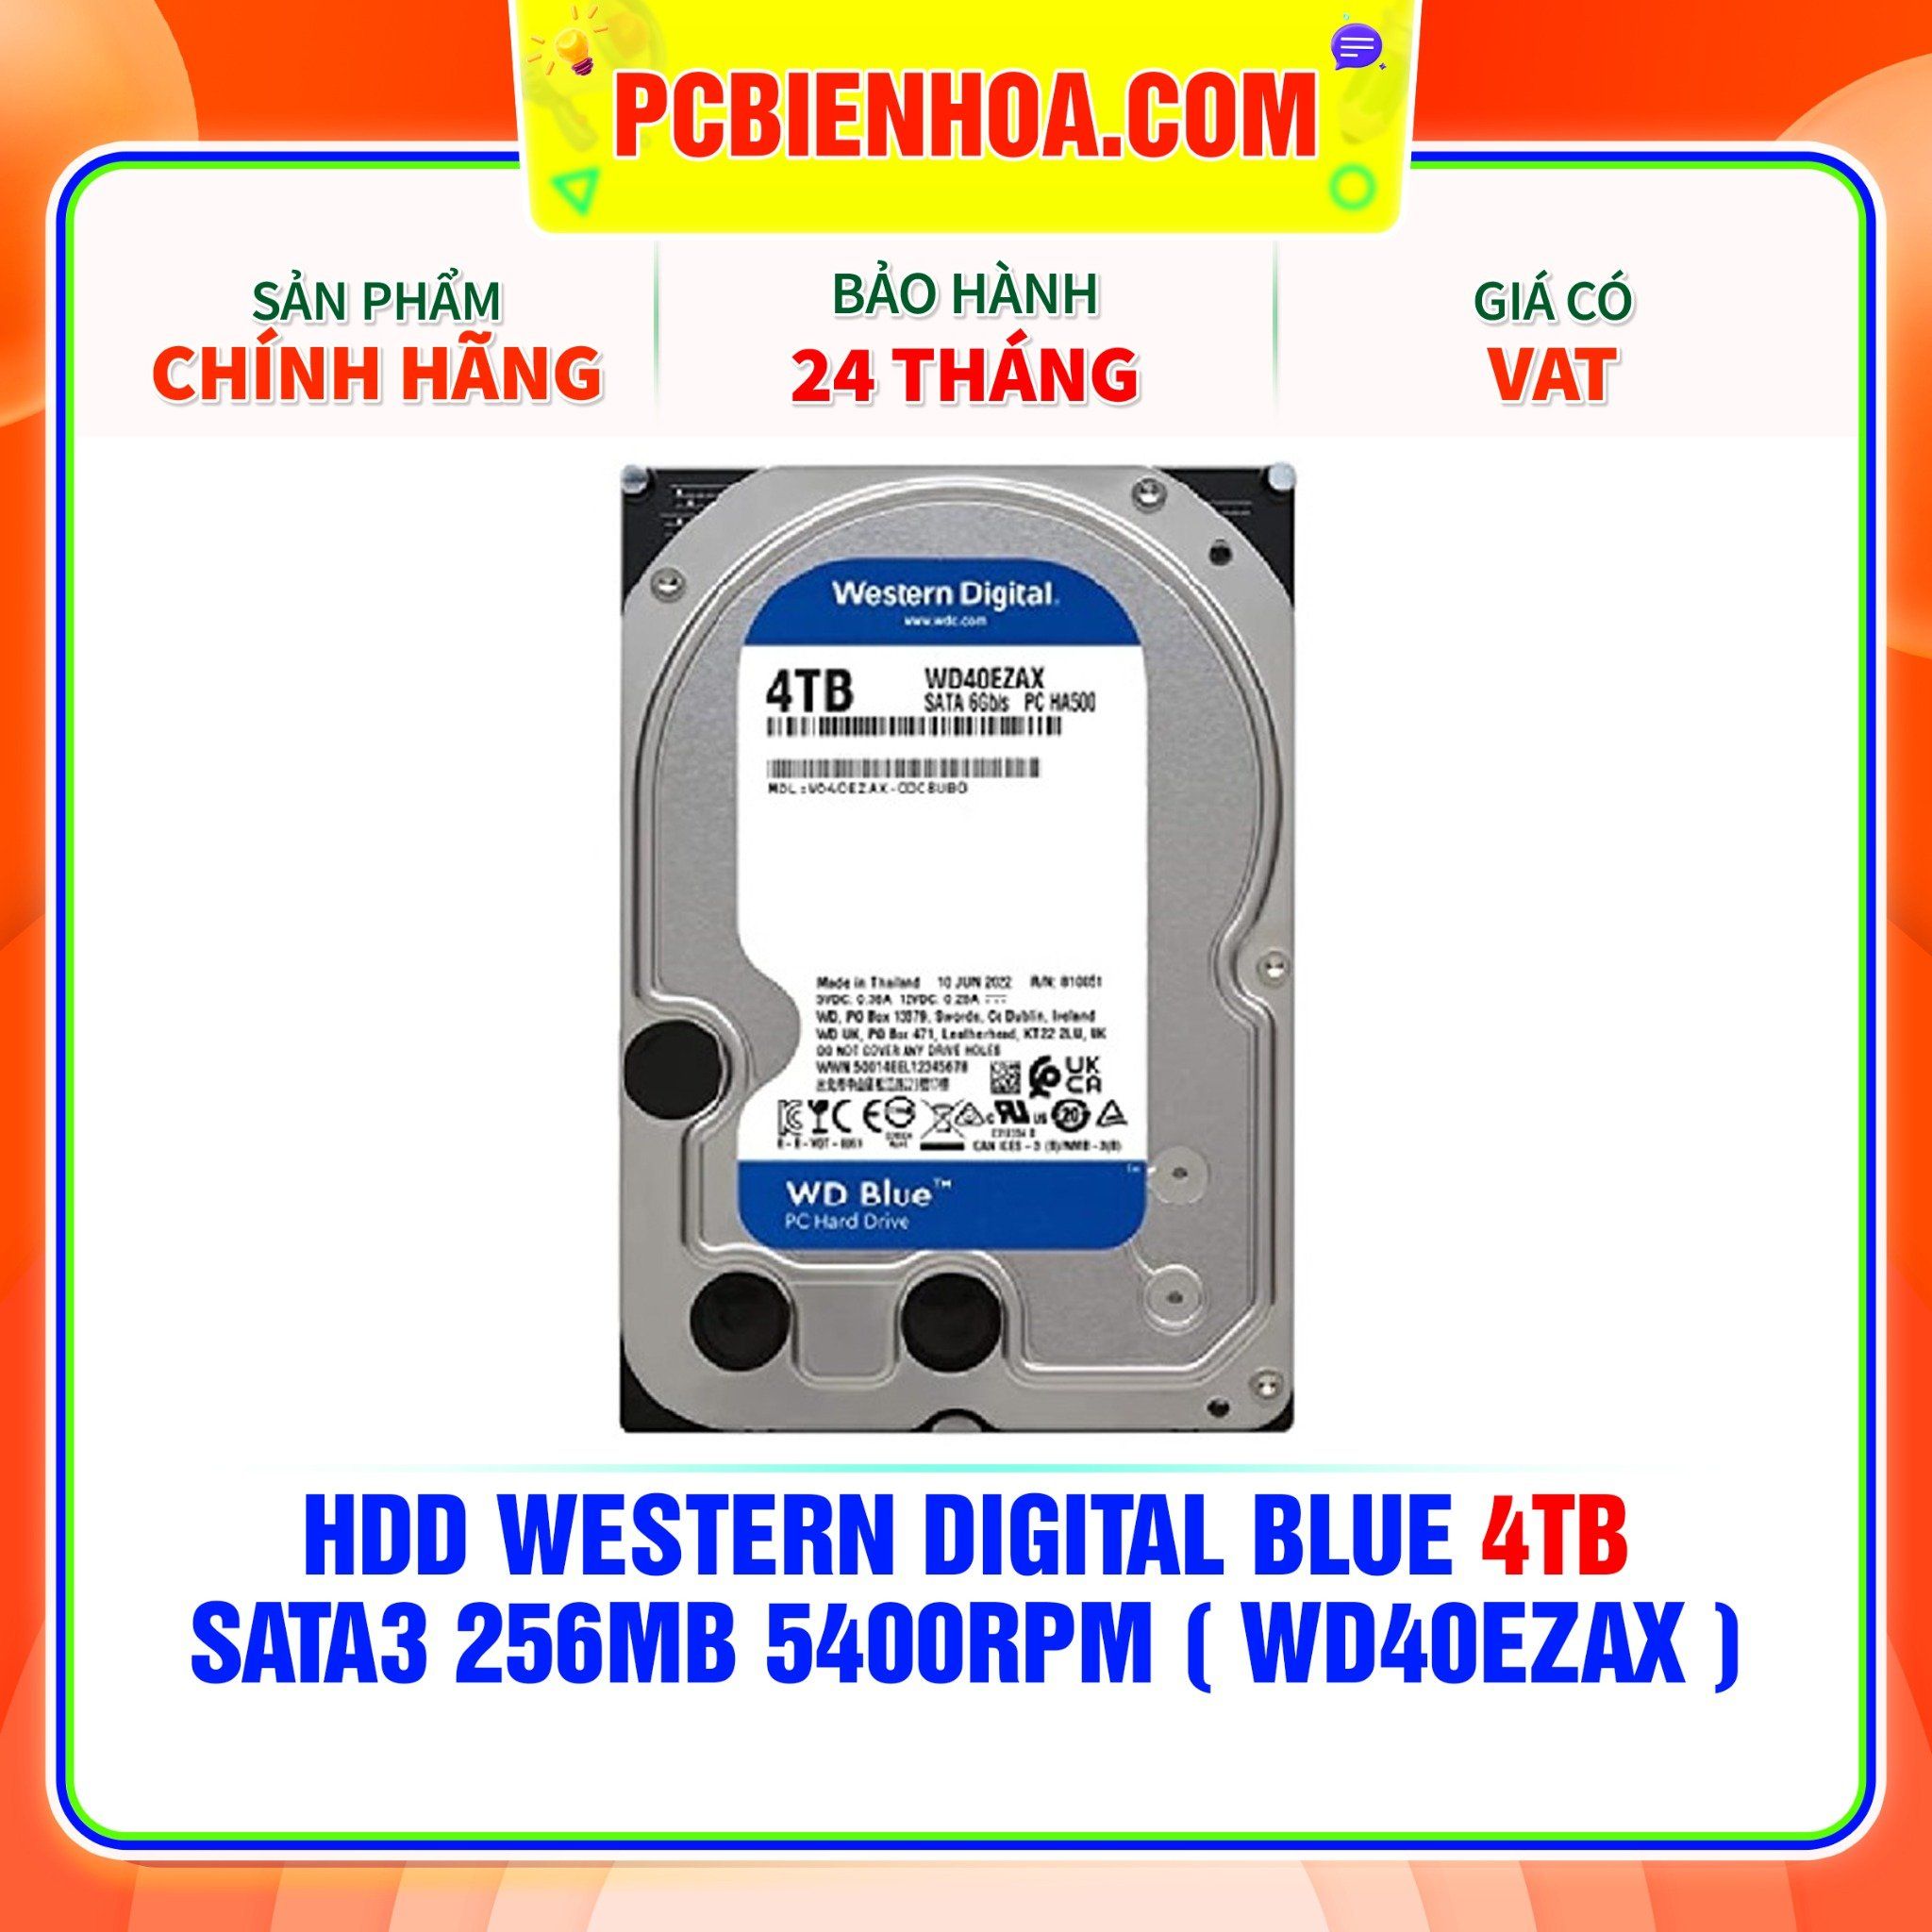  HDD WESTERN DIGITAL BLUE 4TB - SATA3 256MB 5400RPM ( WD40EZAX ) 